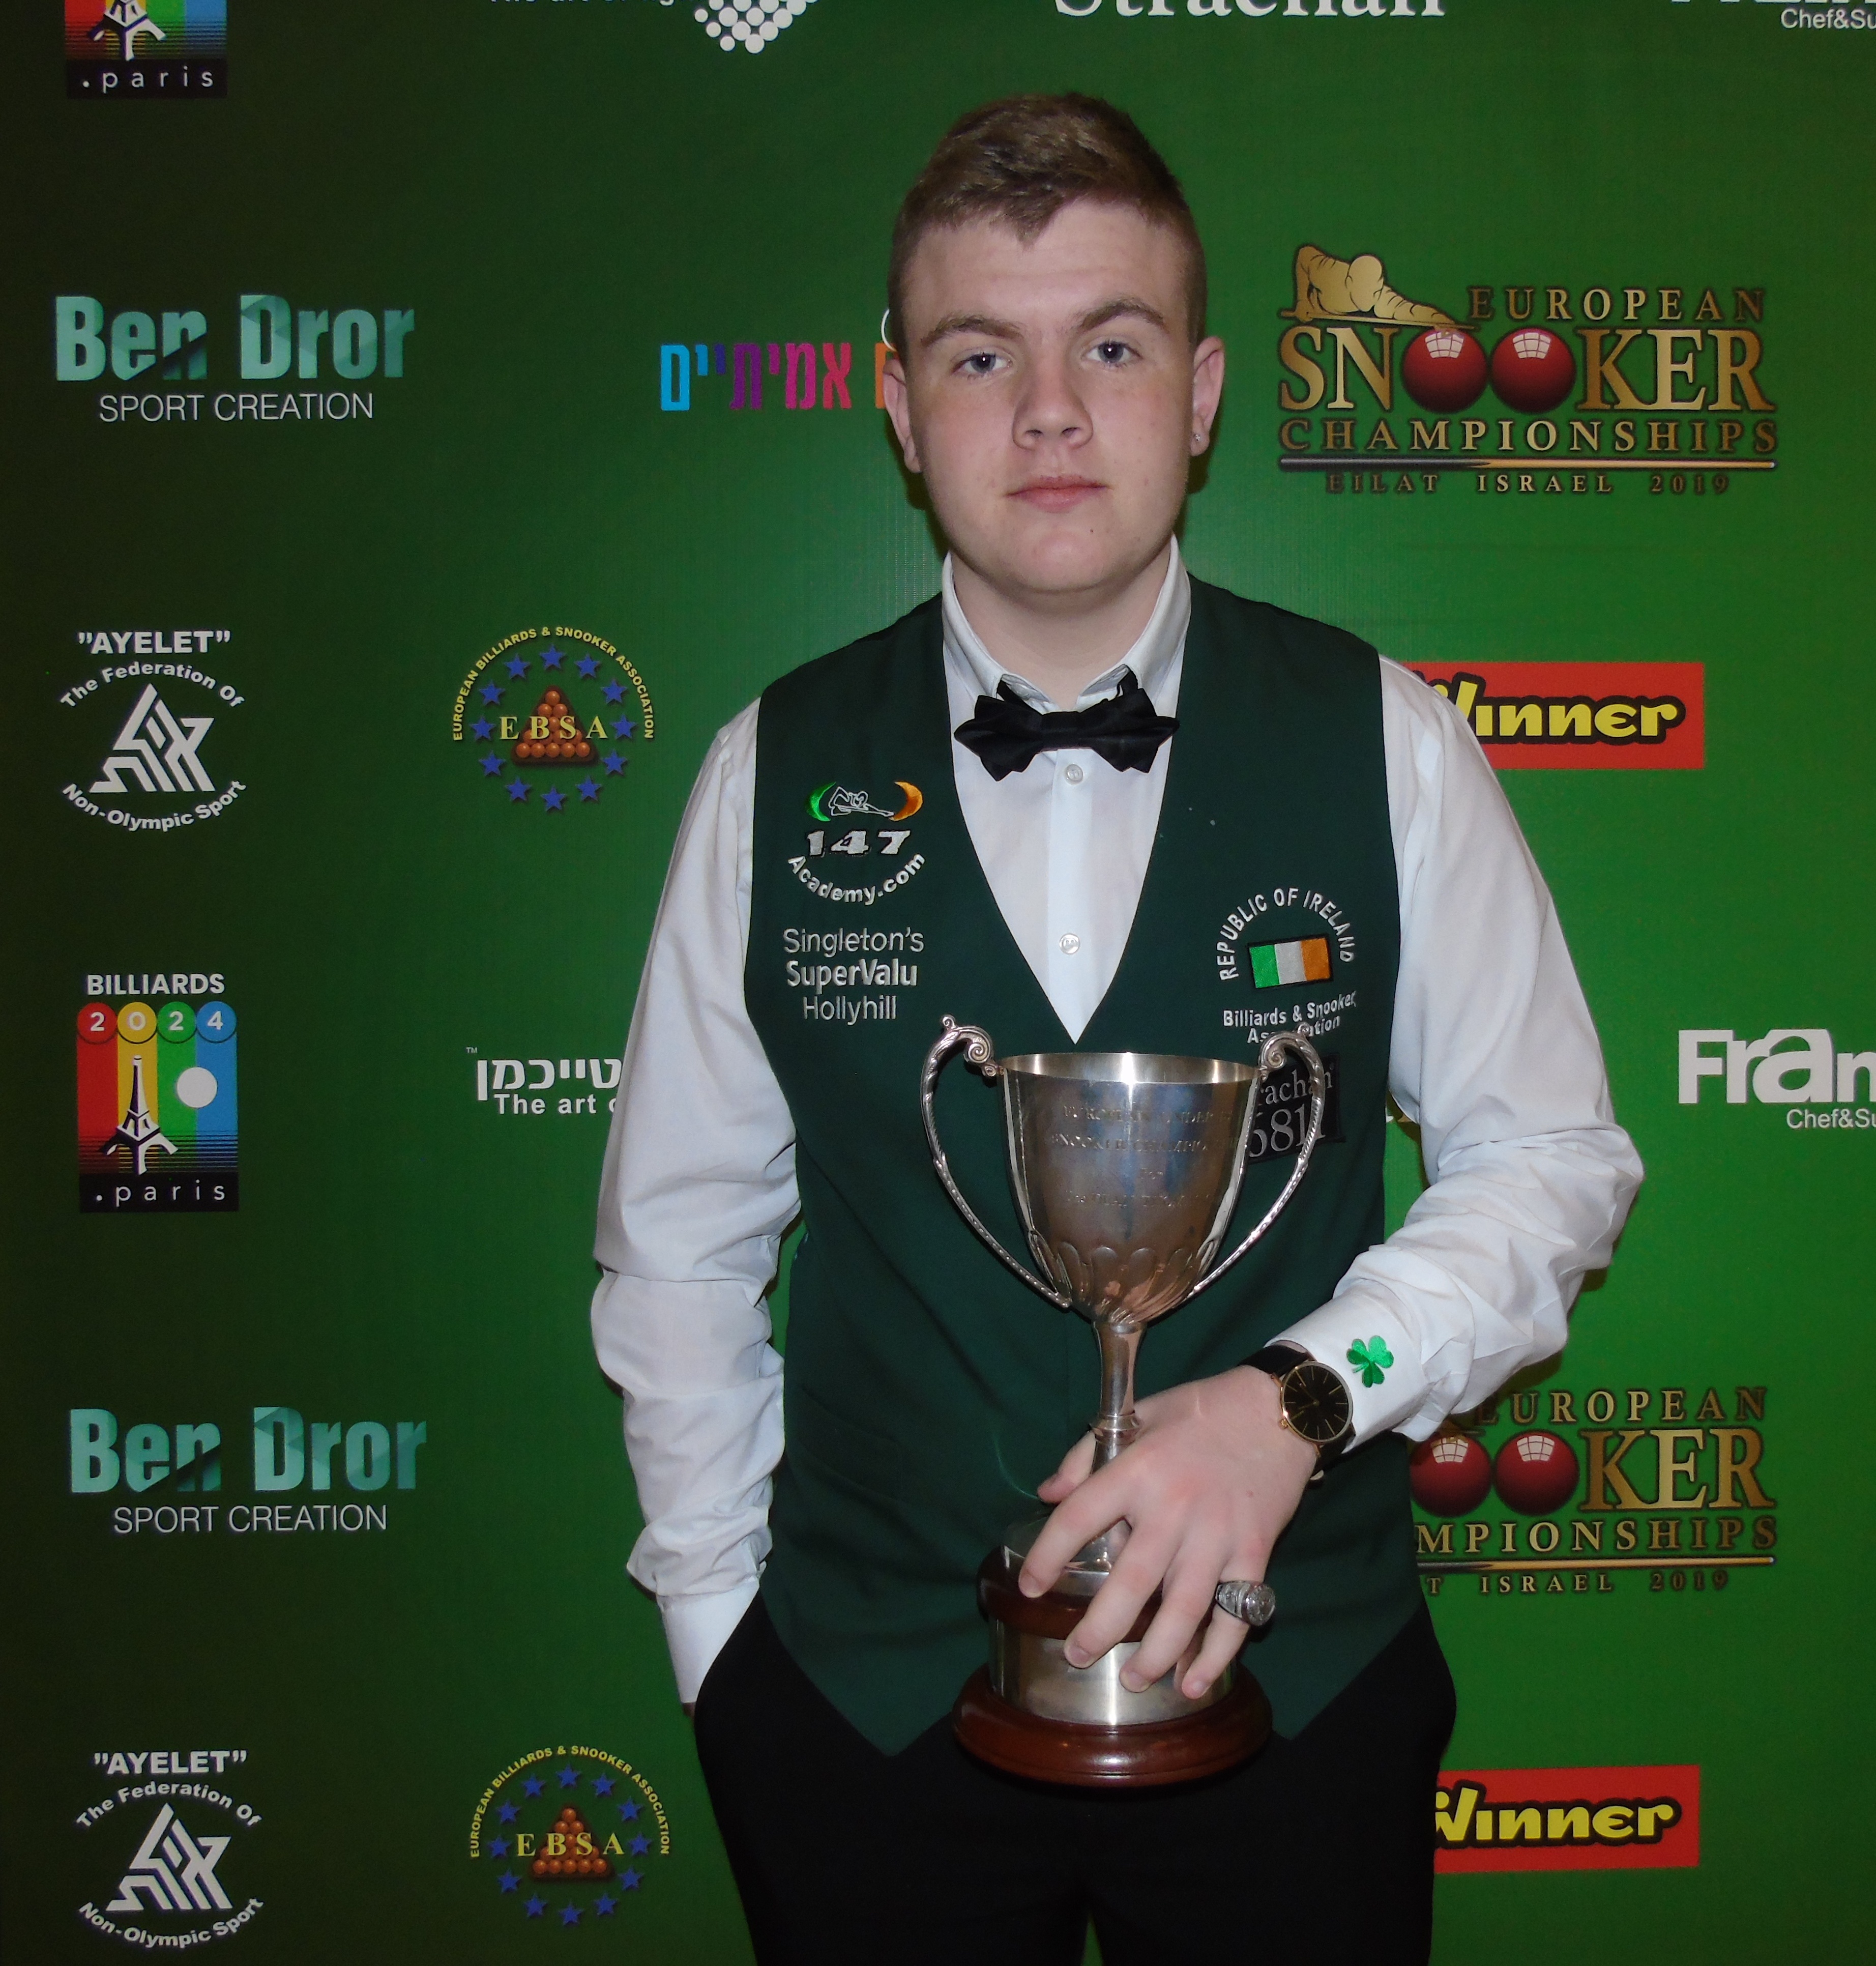 Aaron Hill is the U18 European Snooker Champion